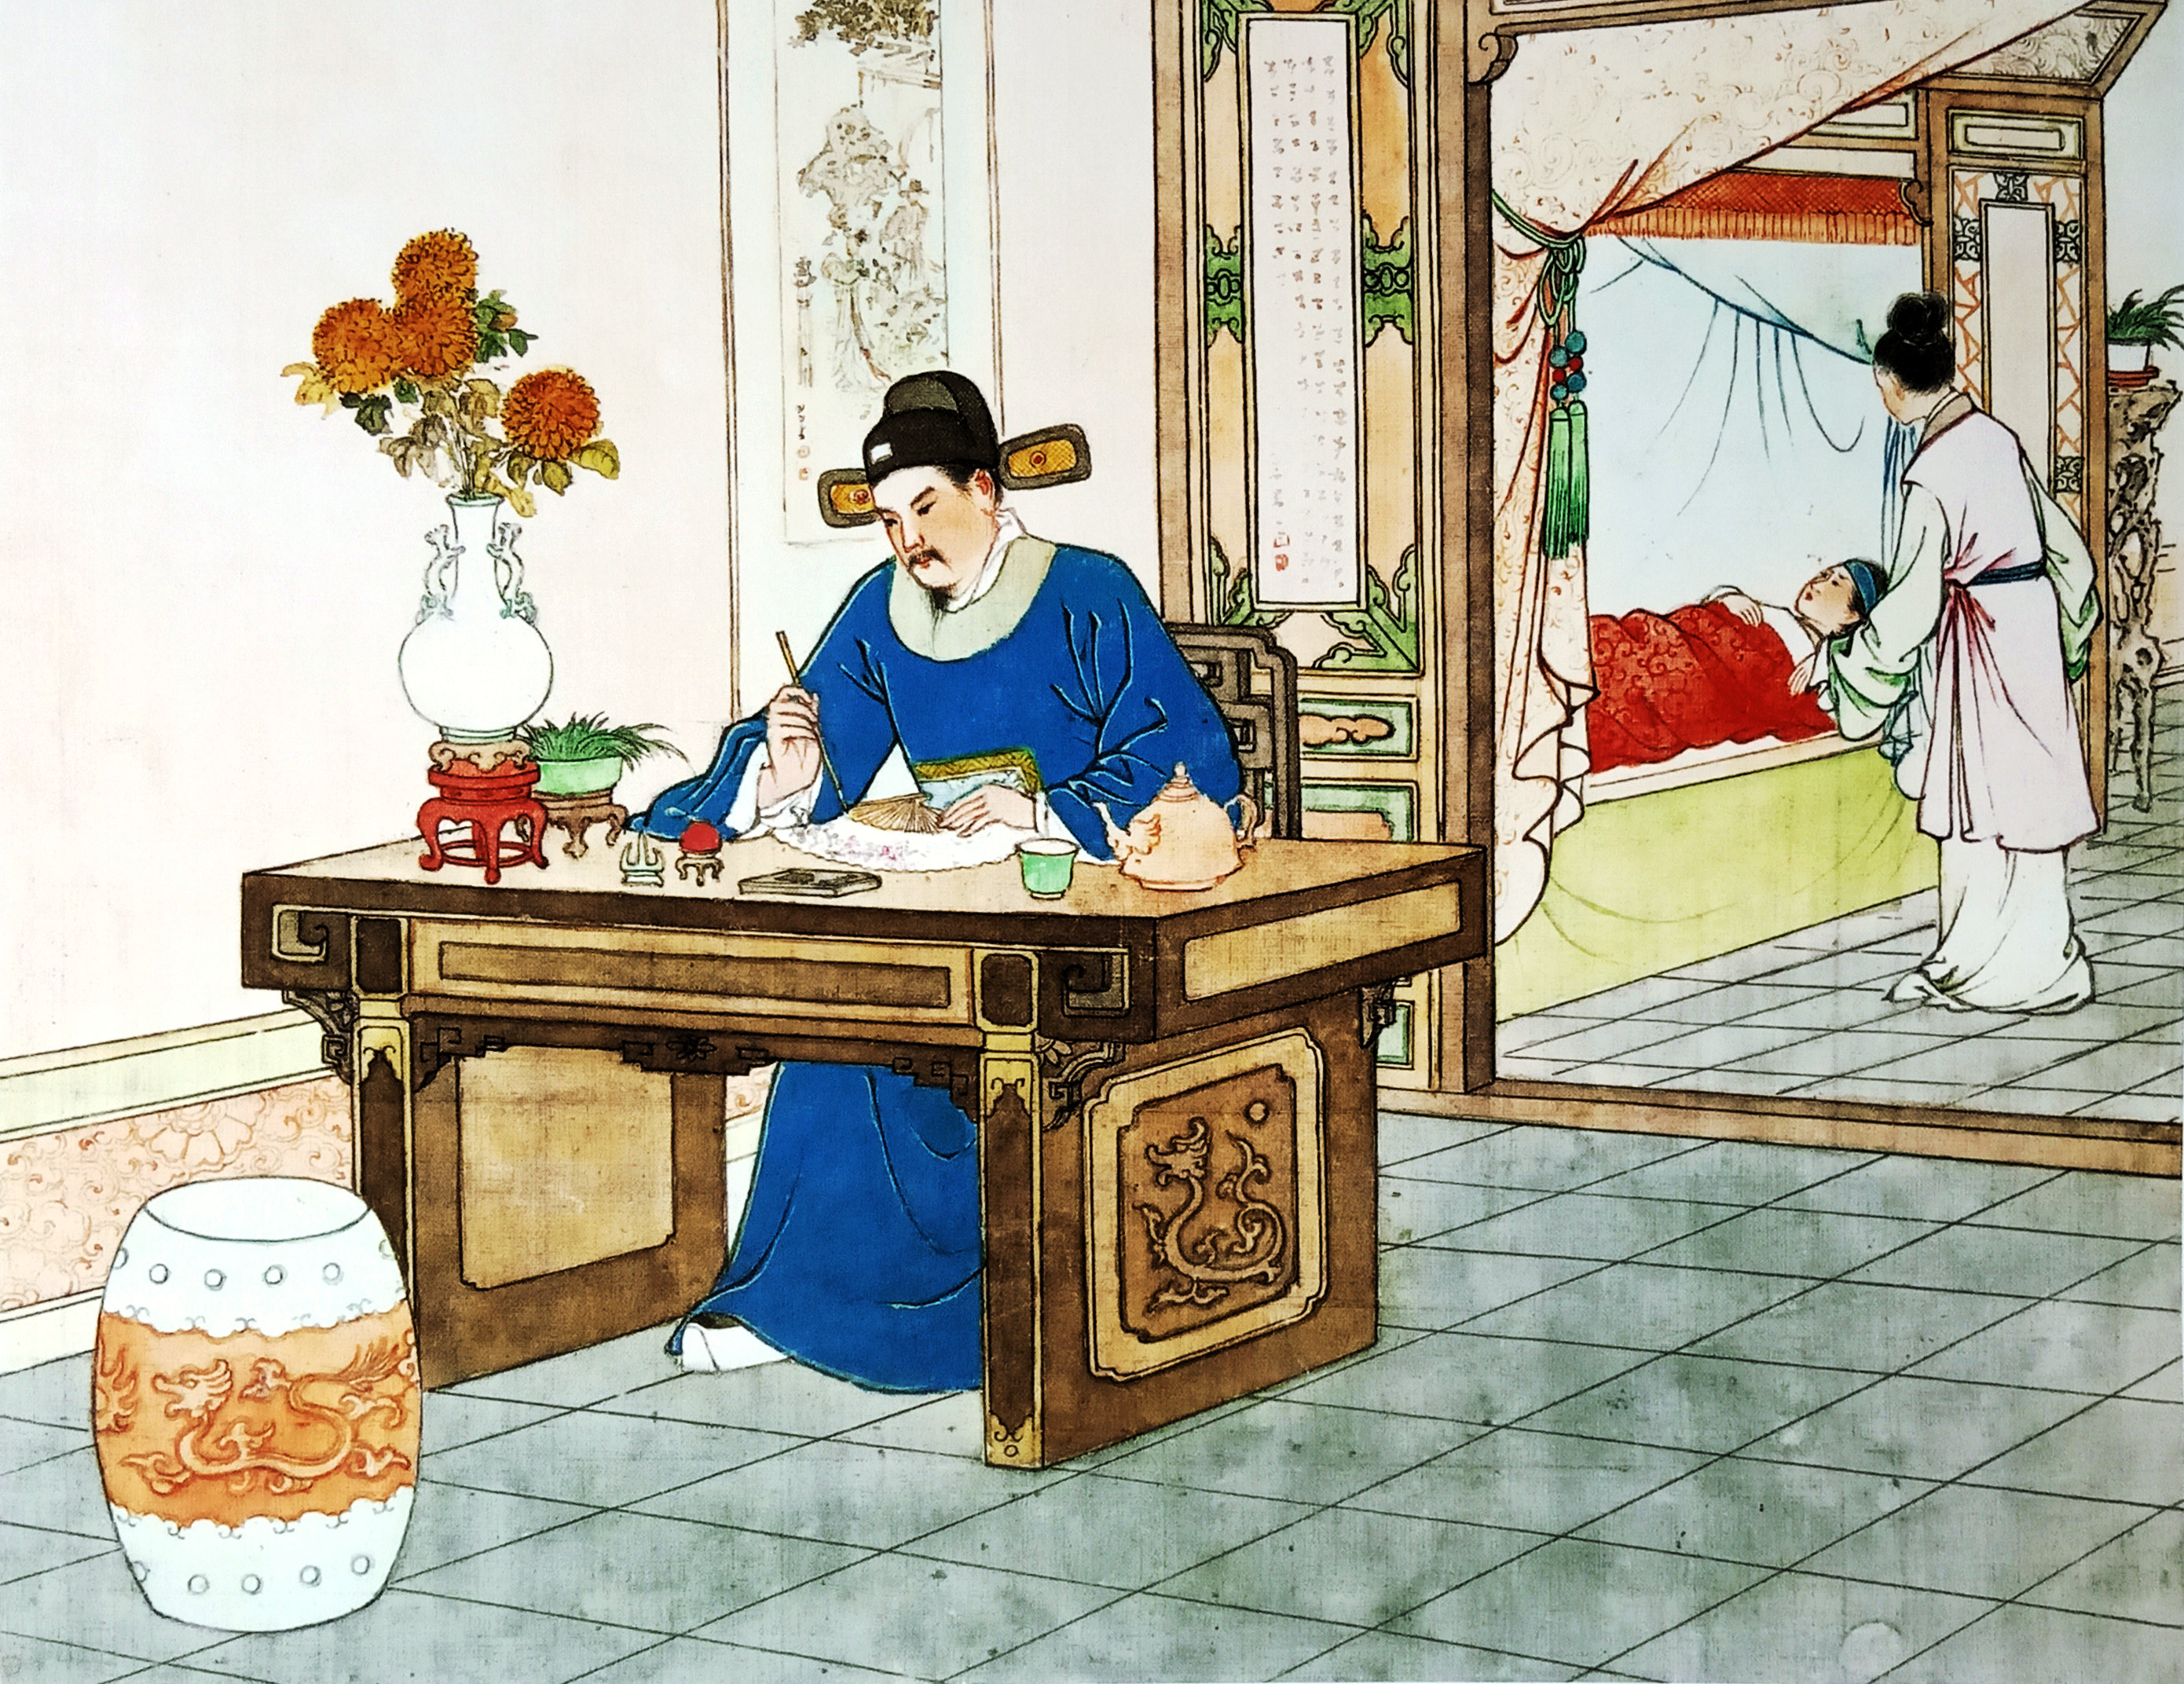 中国现代连环画家任率英的桃花扇图画